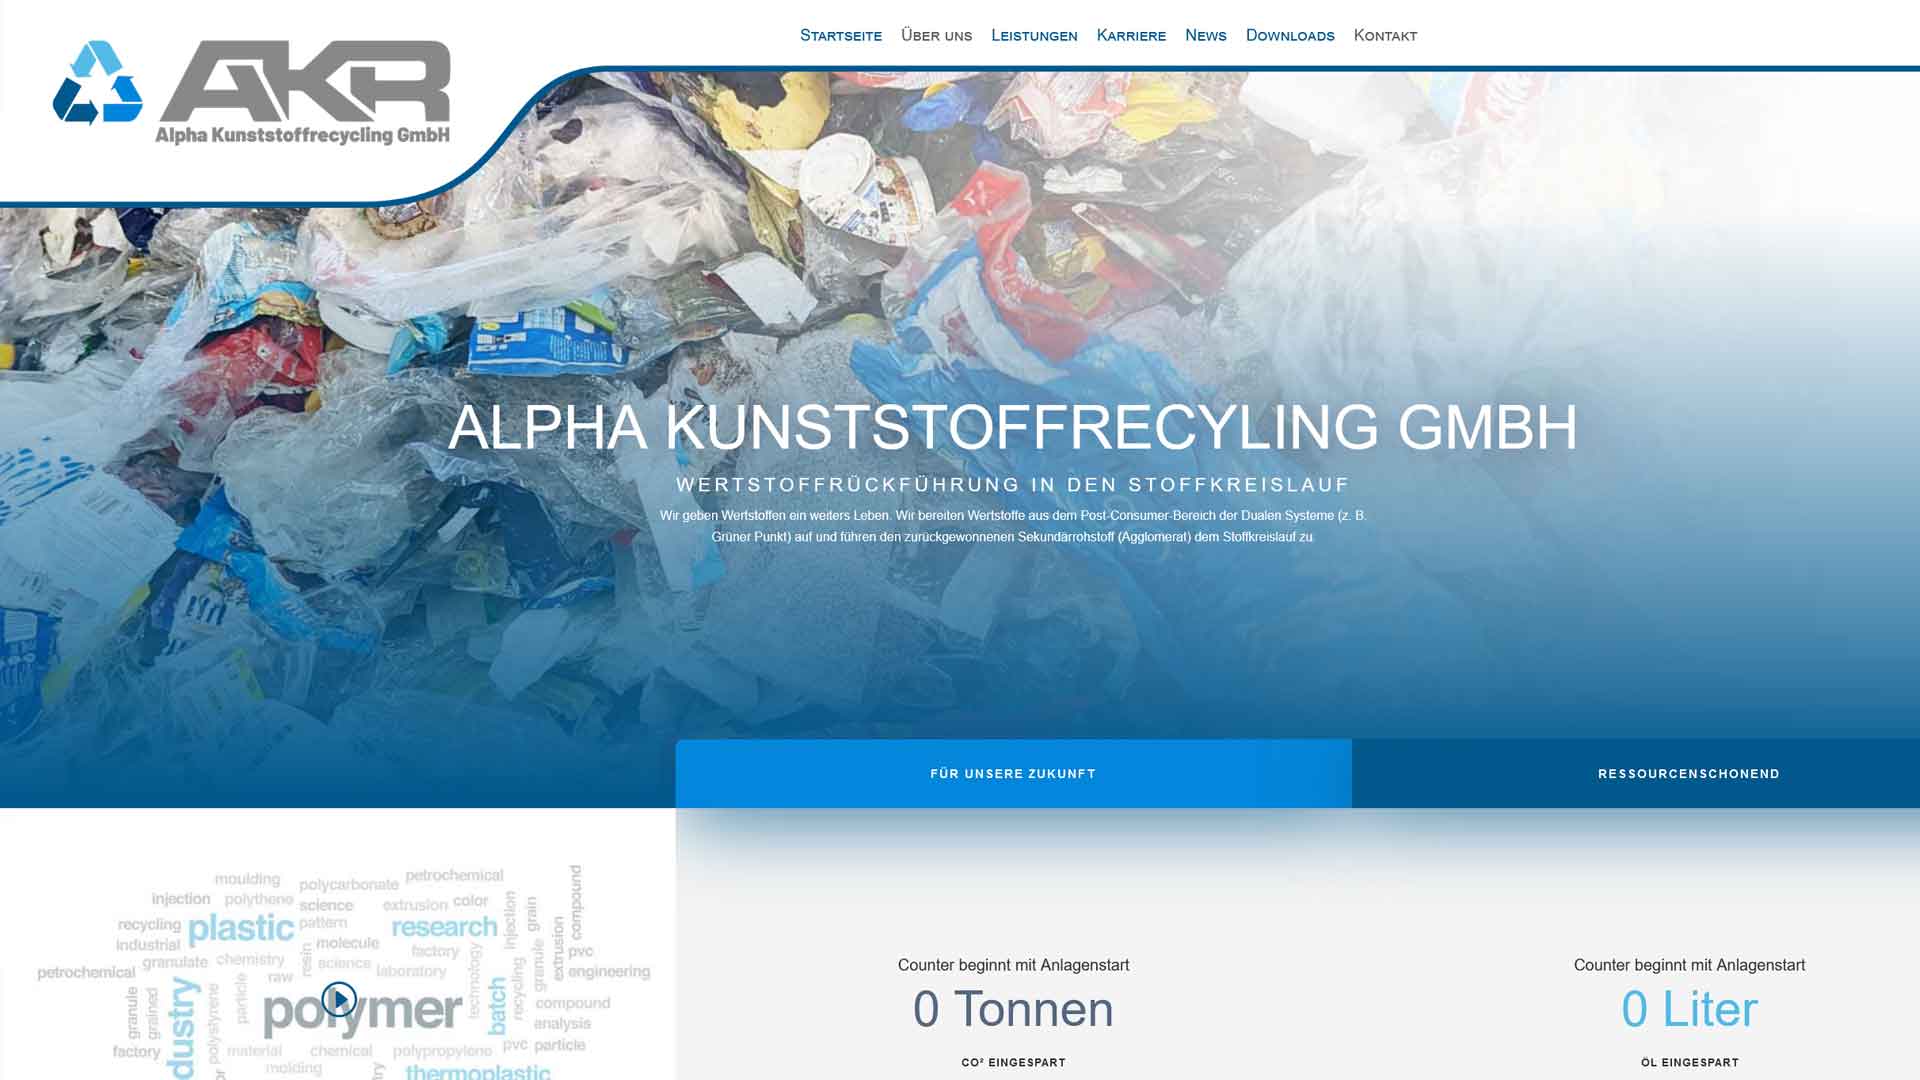 Werbeagentur für Webdesign in Augsburg – AKR GmbH